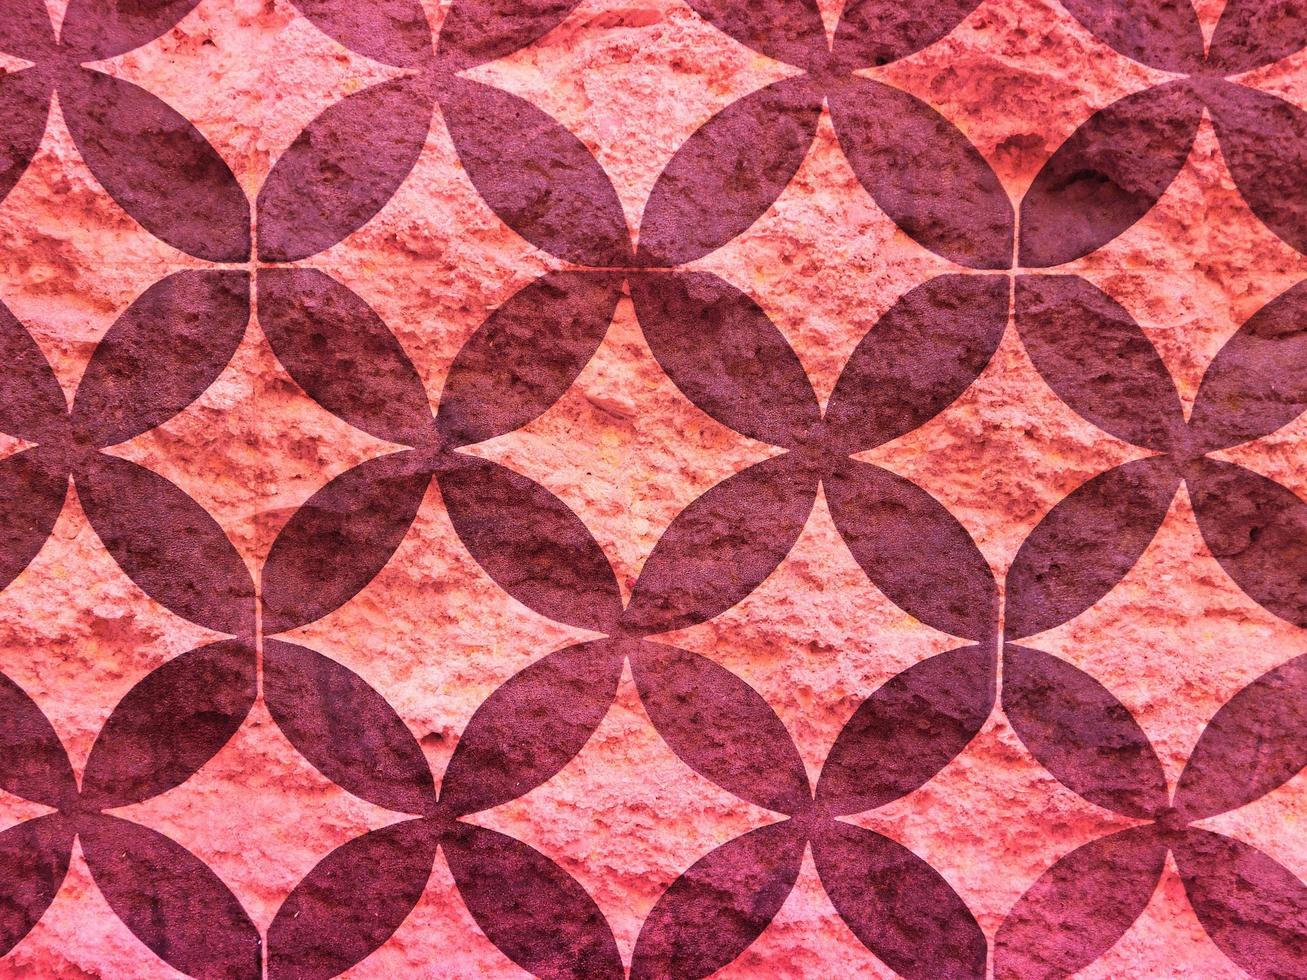 textura de pedra rosa foto